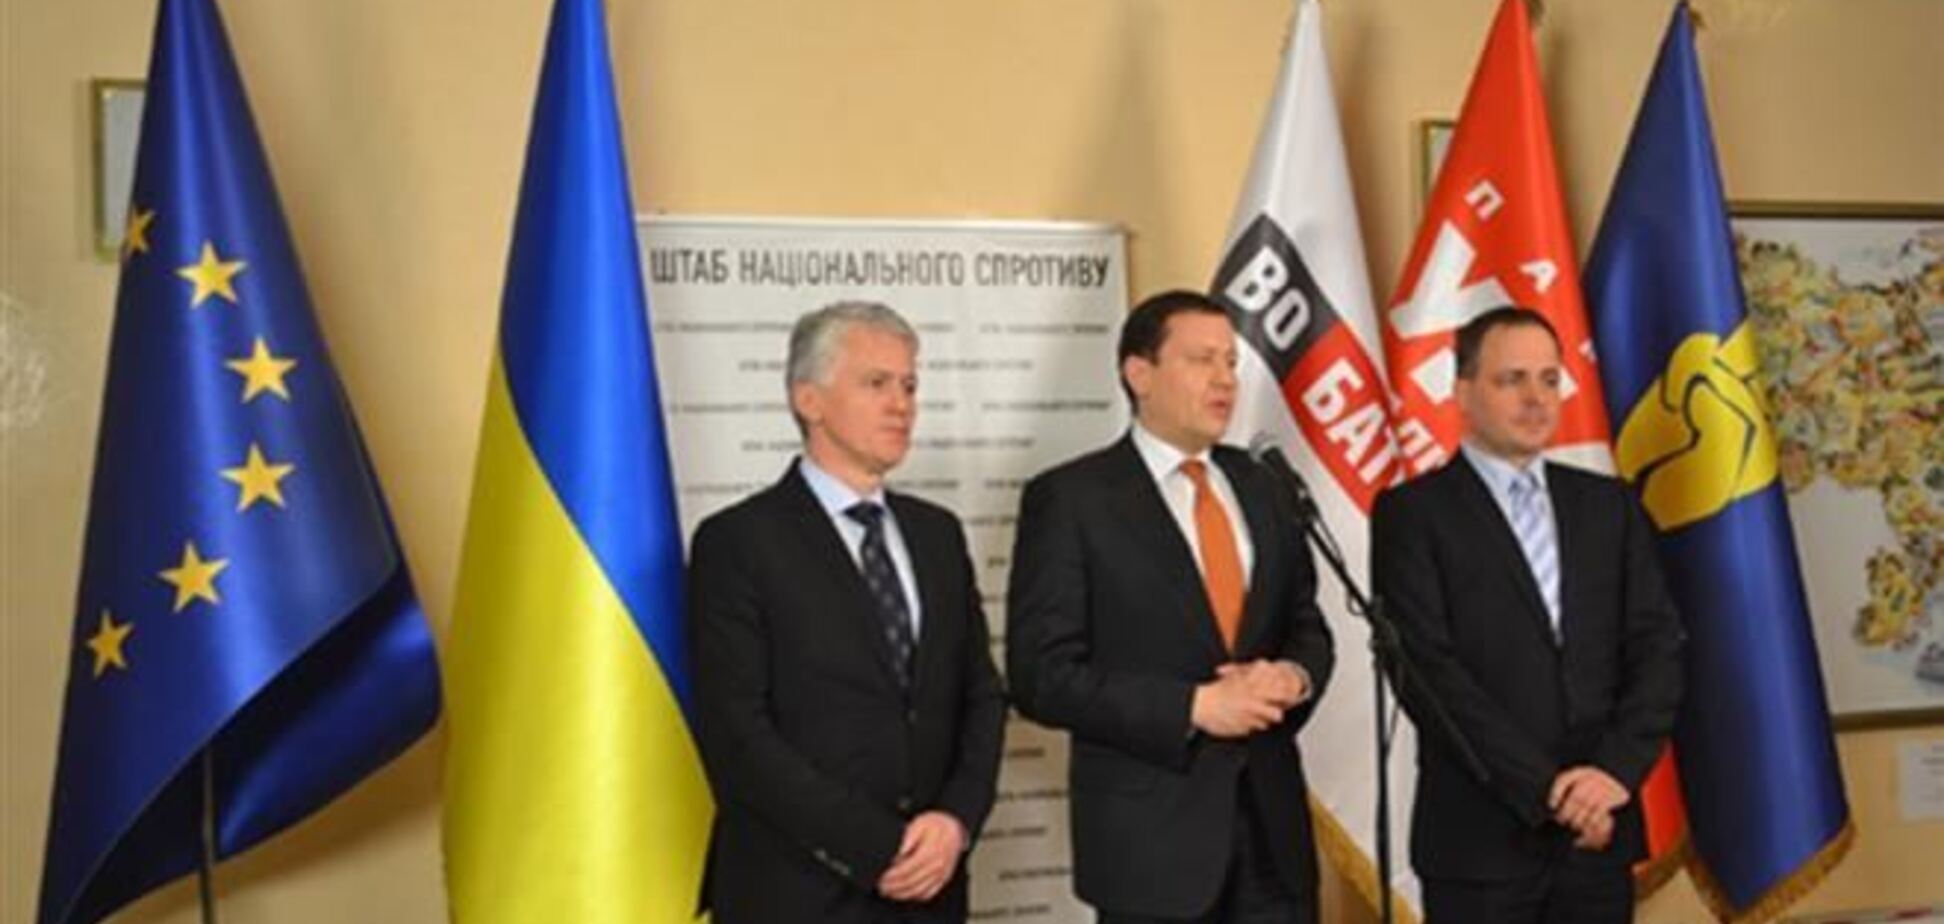 Словацкие депутаты выступили на Евромайдане